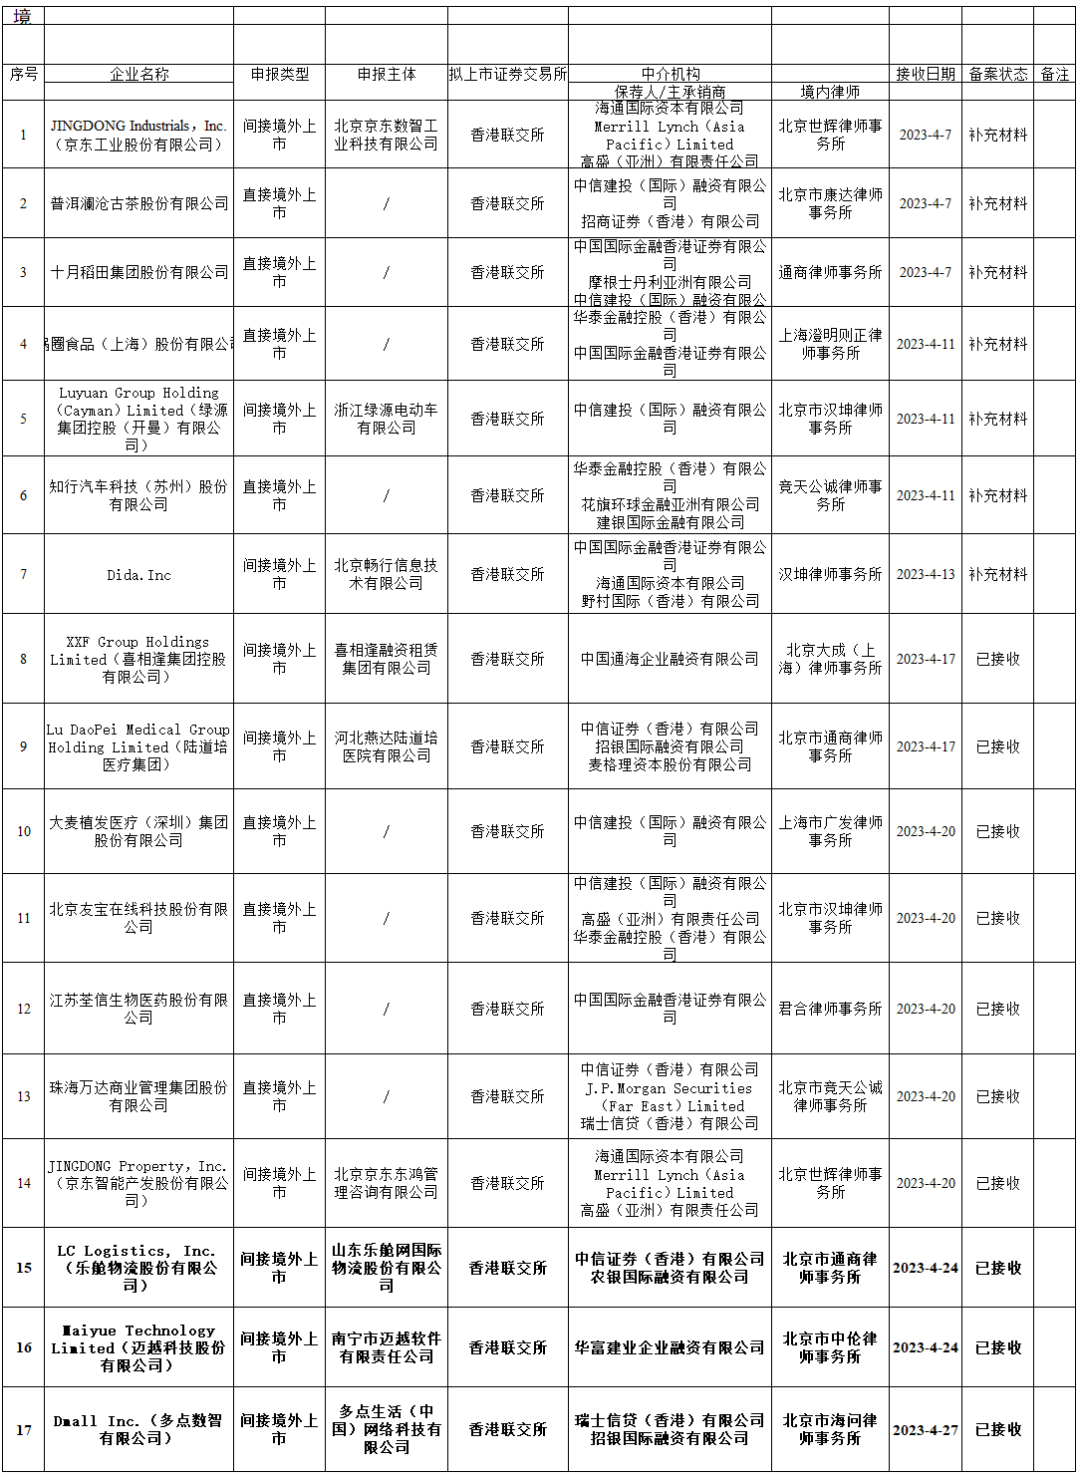 多點Dmall、樂艙物流、邁越科技等3家擬香港IPO上市公司在中國證監會備案(2023年4月27日)